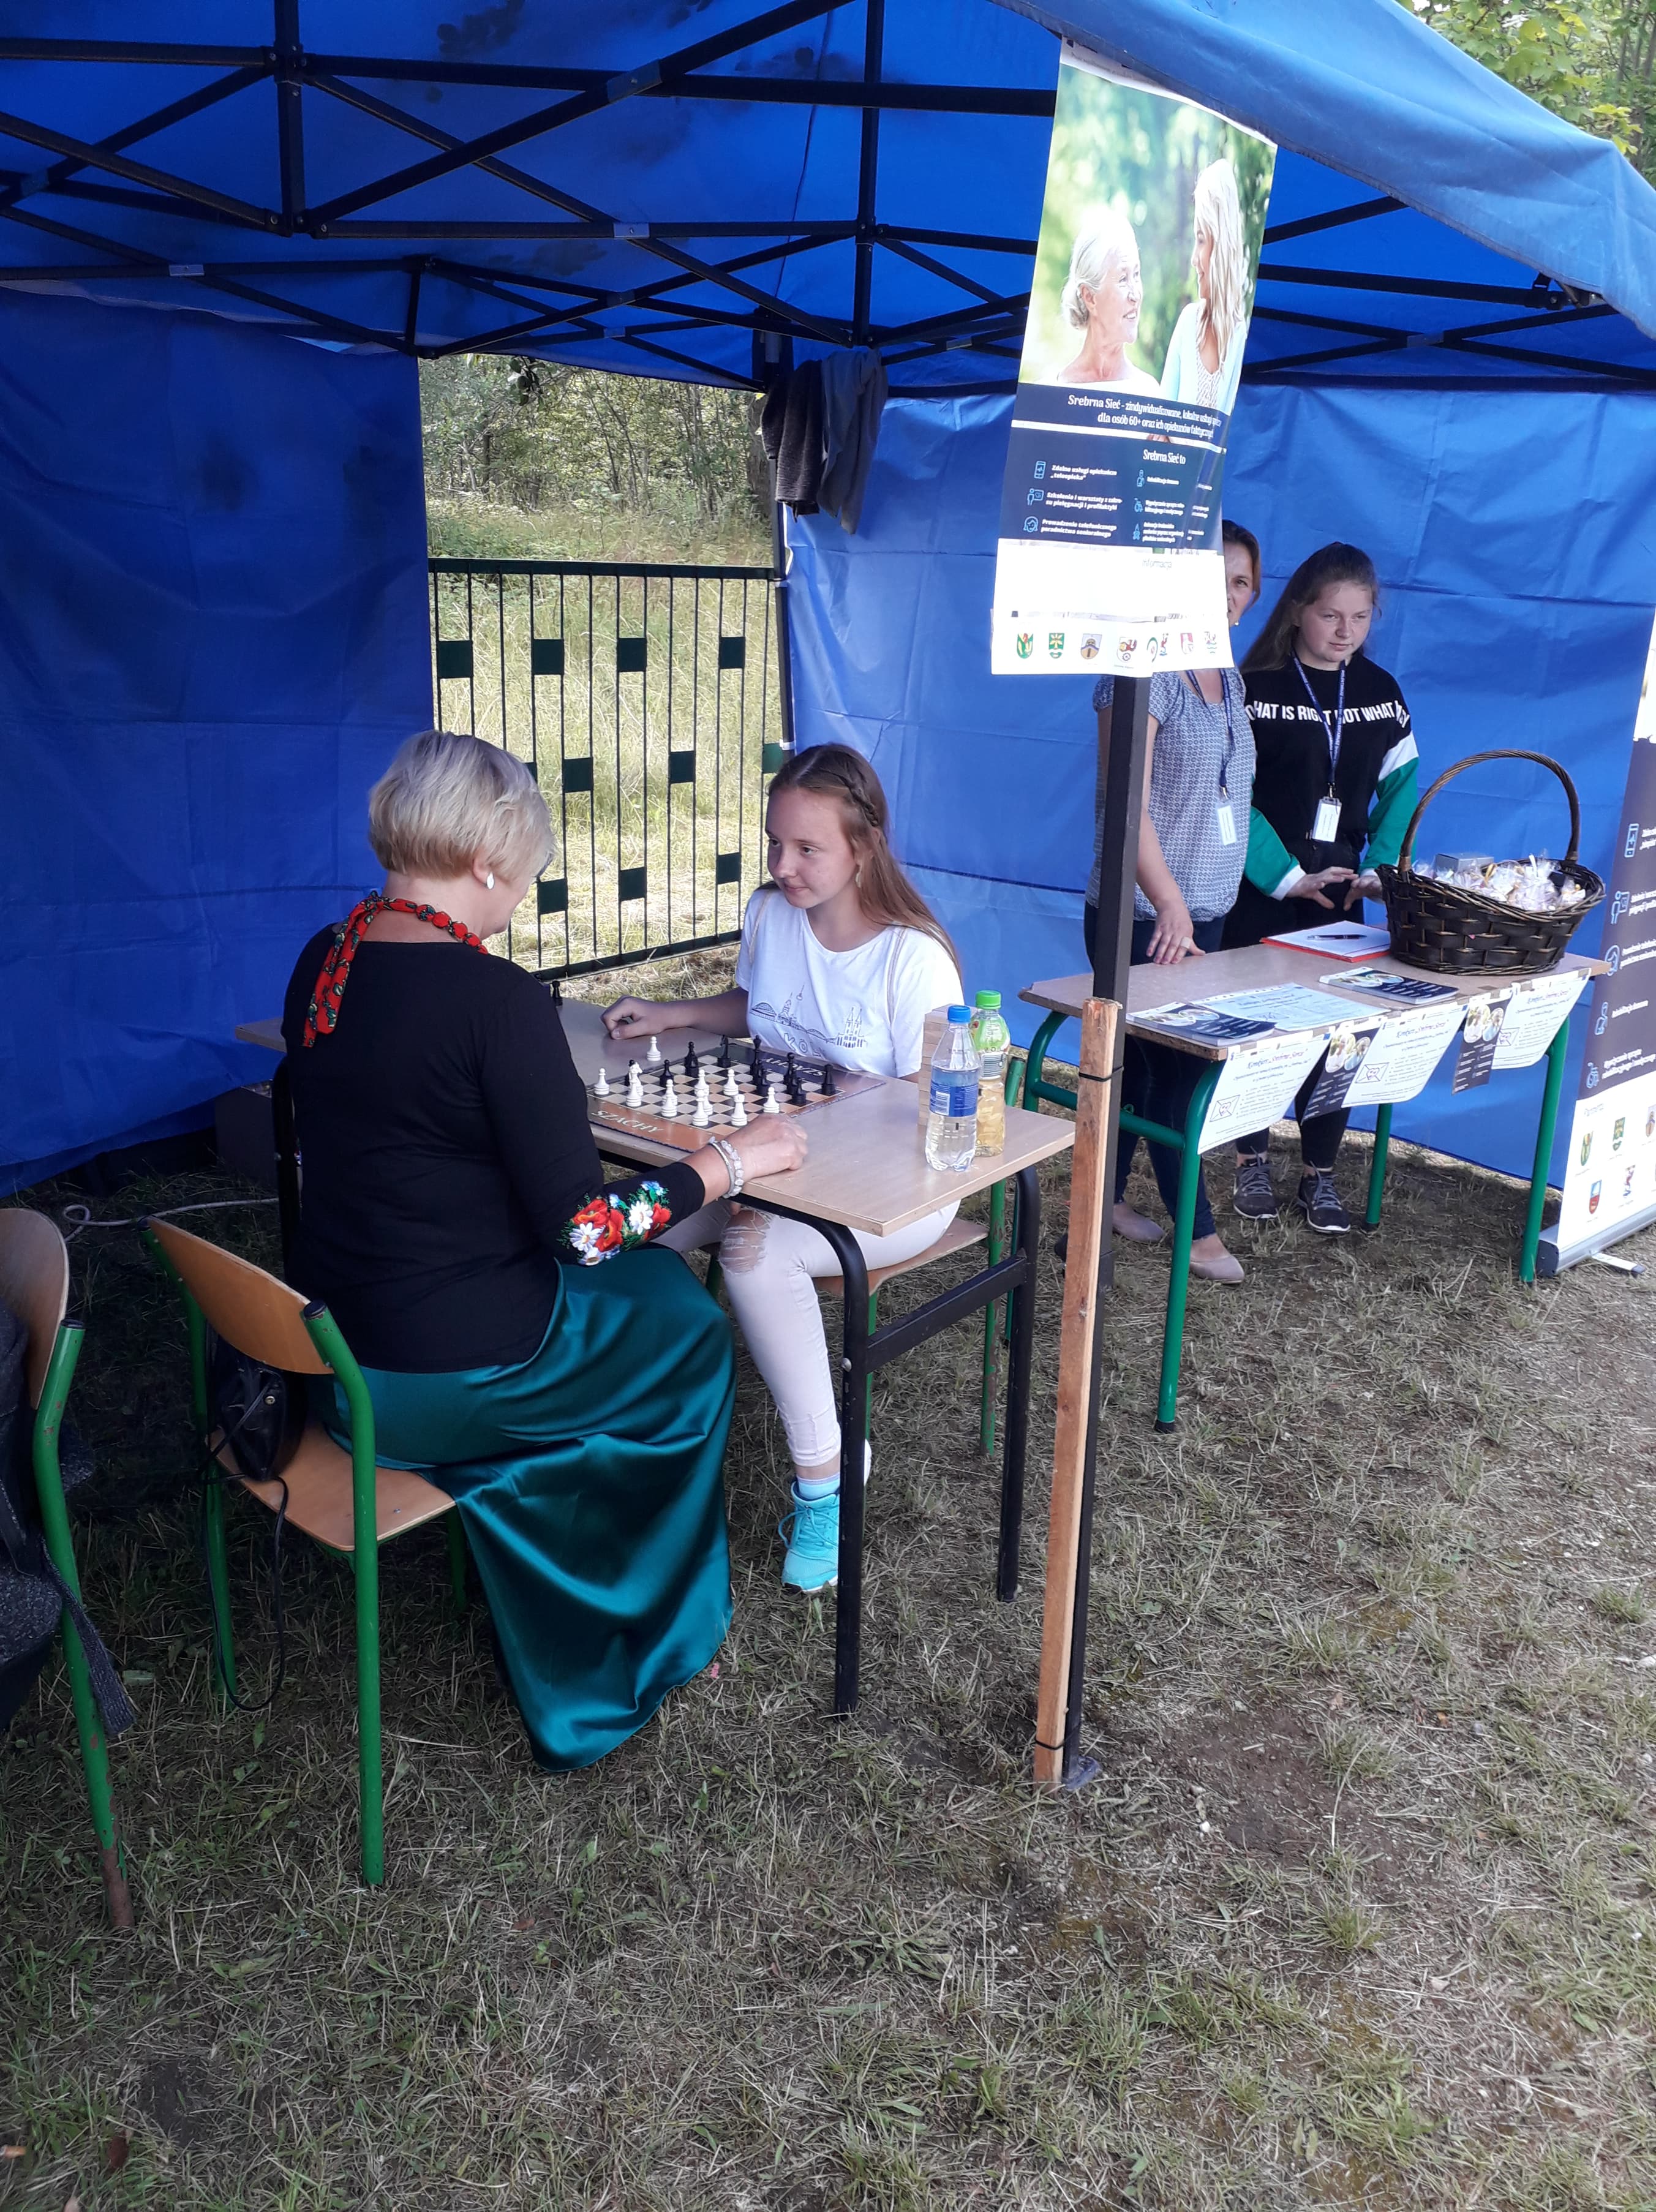 Uczestnicy Główczyckiego Festiwalu Lata grający w gry planszowe pod namiotem promującym projekt Srebrna Sieć.